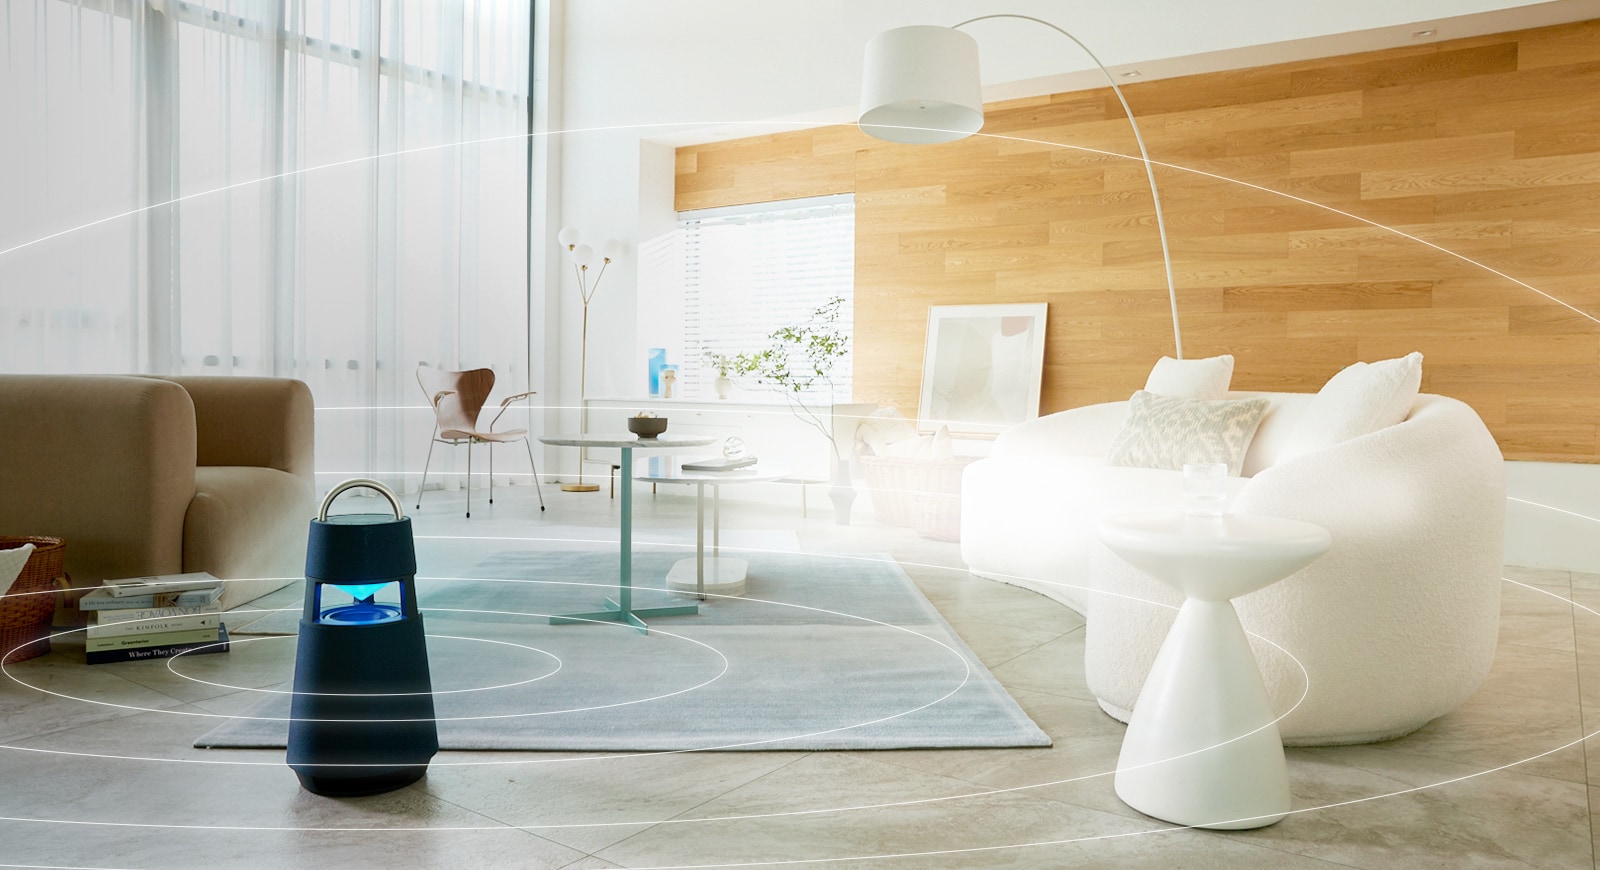 Hình ảnh các sóng âm thanh đang lan tỏa xung quanh chiếc loa XBOOM 360 được đặt trên sàn của căn phòng khách theo phong cách tối giản.